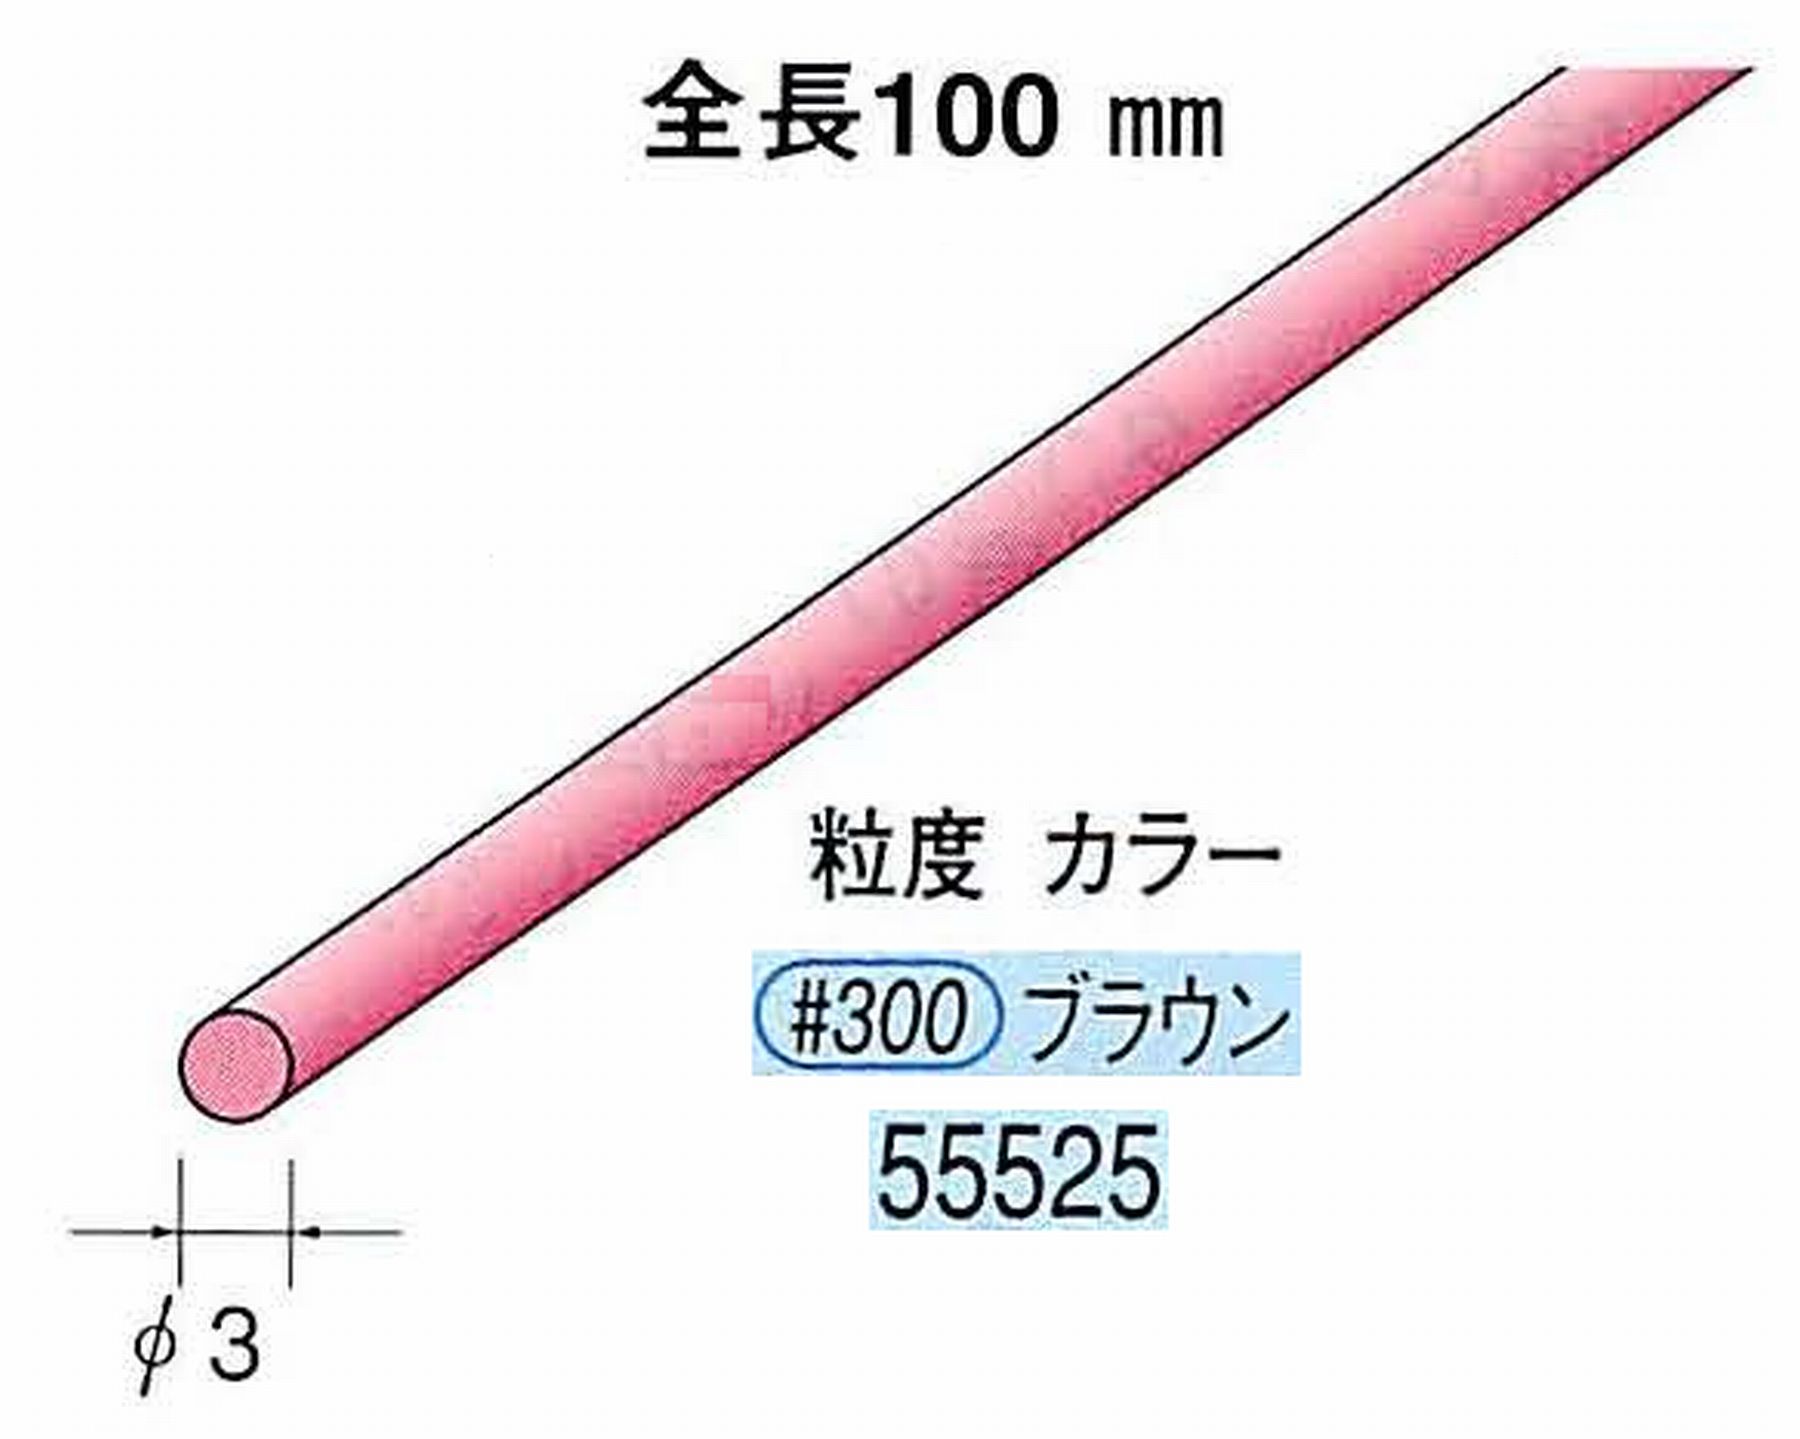 ナカニシ/NAKANISHI セラファイバー砥石 全長100mm ブラウン φ3mm 55525